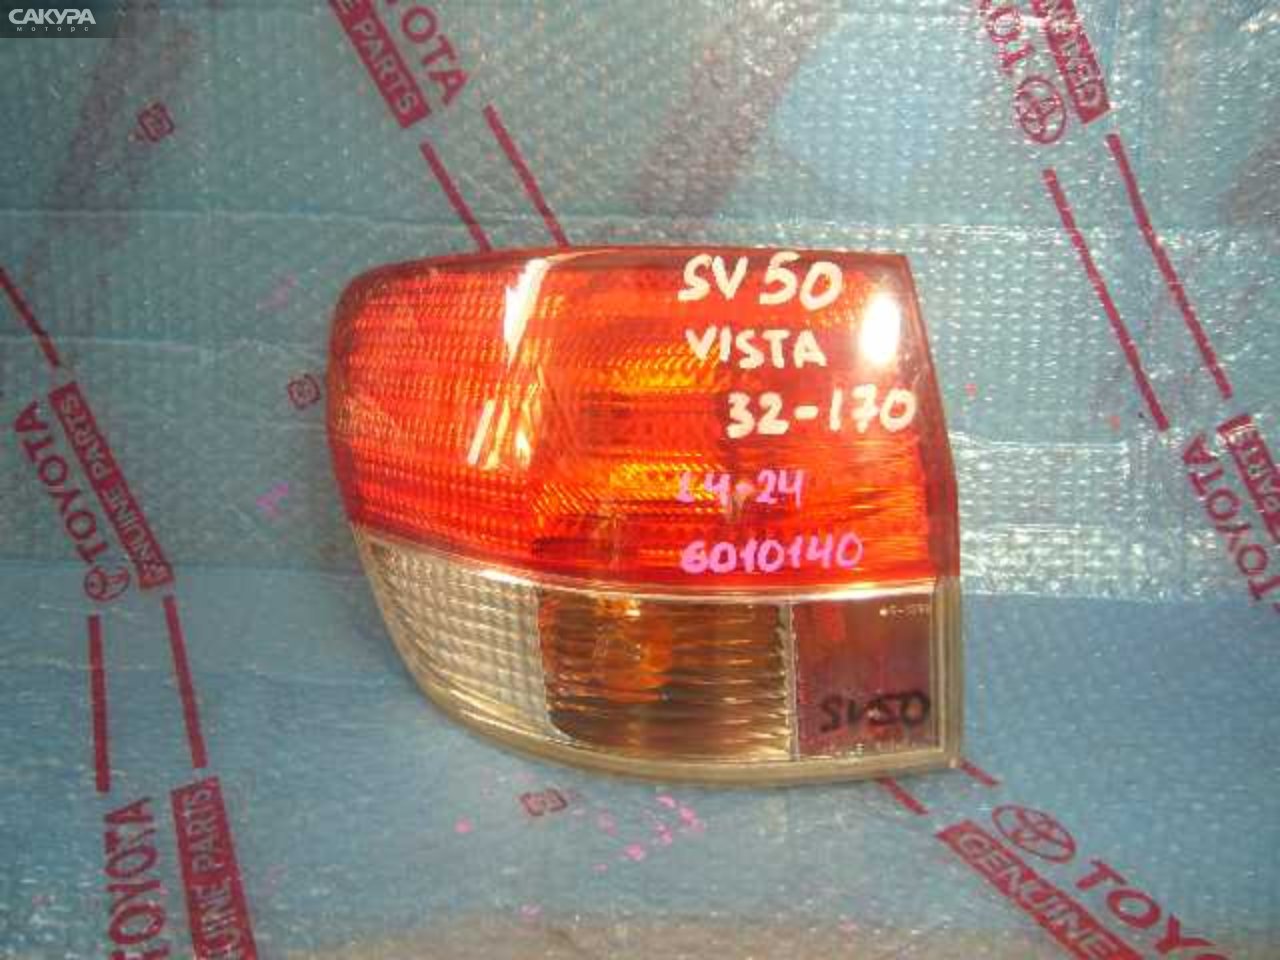 Фонарь стоп-сигнала левый Toyota Vista Ardeo SV50 32-170: купить в Сакура Кемерово.